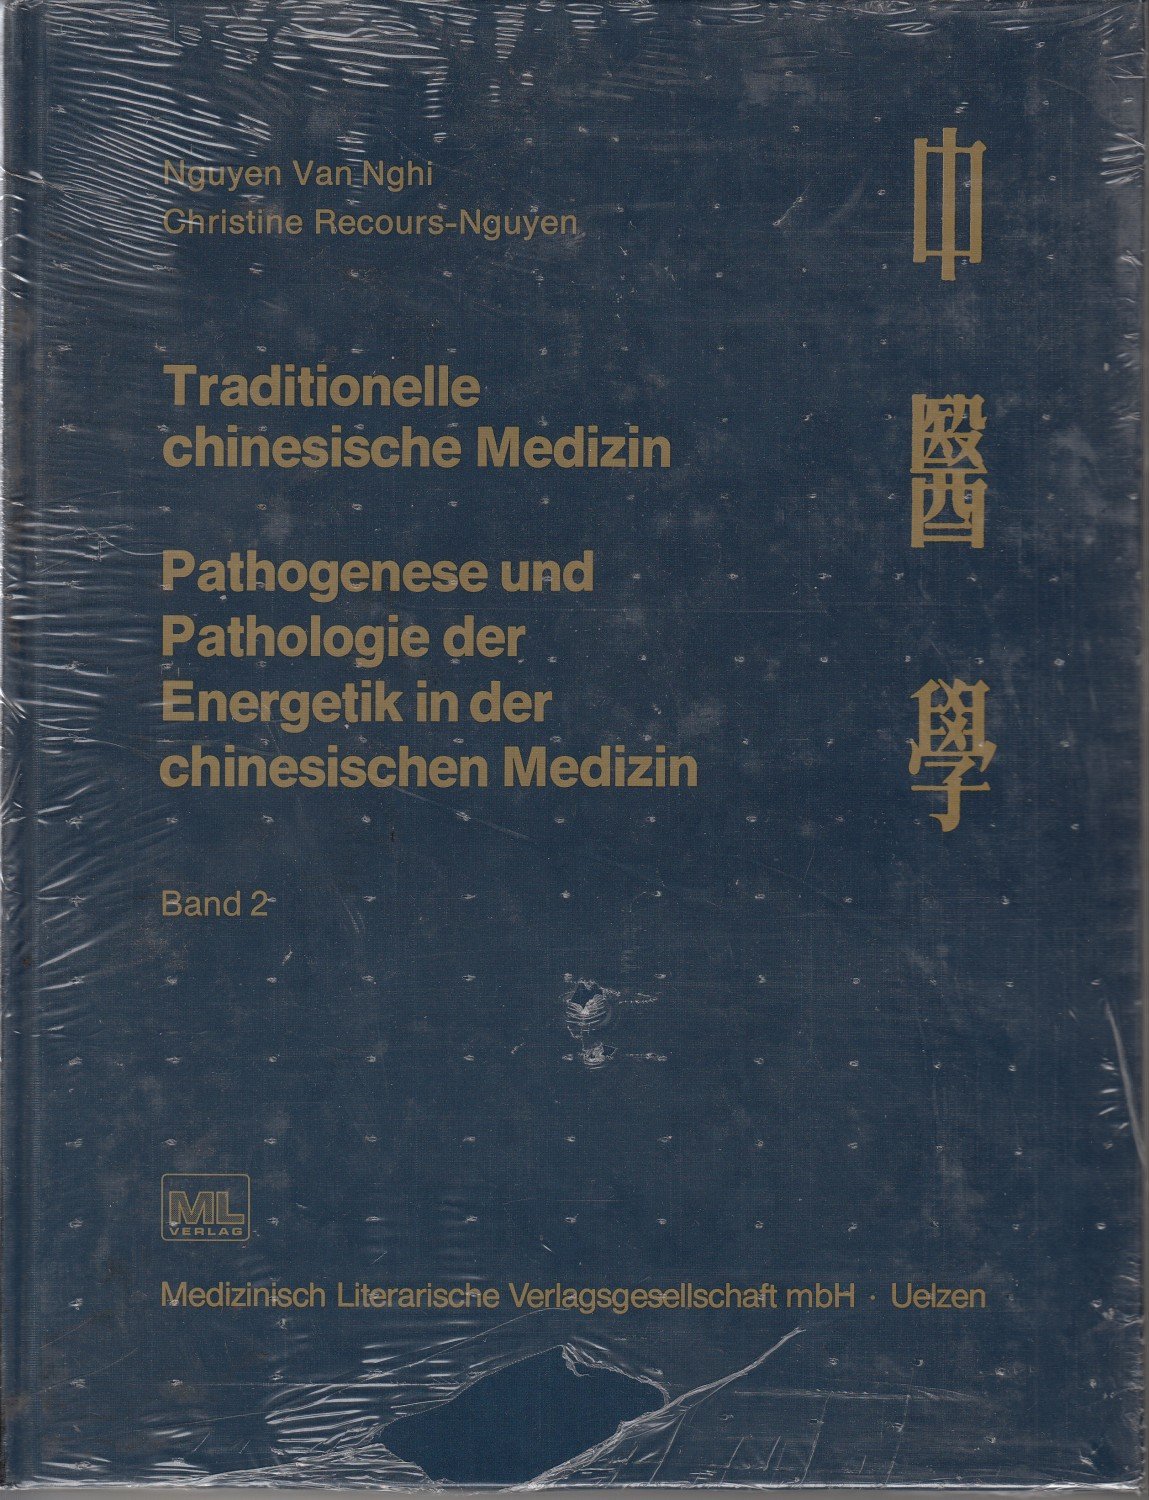 book soziale medizin ein lehrbuch für ärzte studierende medizinal und verwaltungsbeamte sozialpolitiker behörden und kommunen